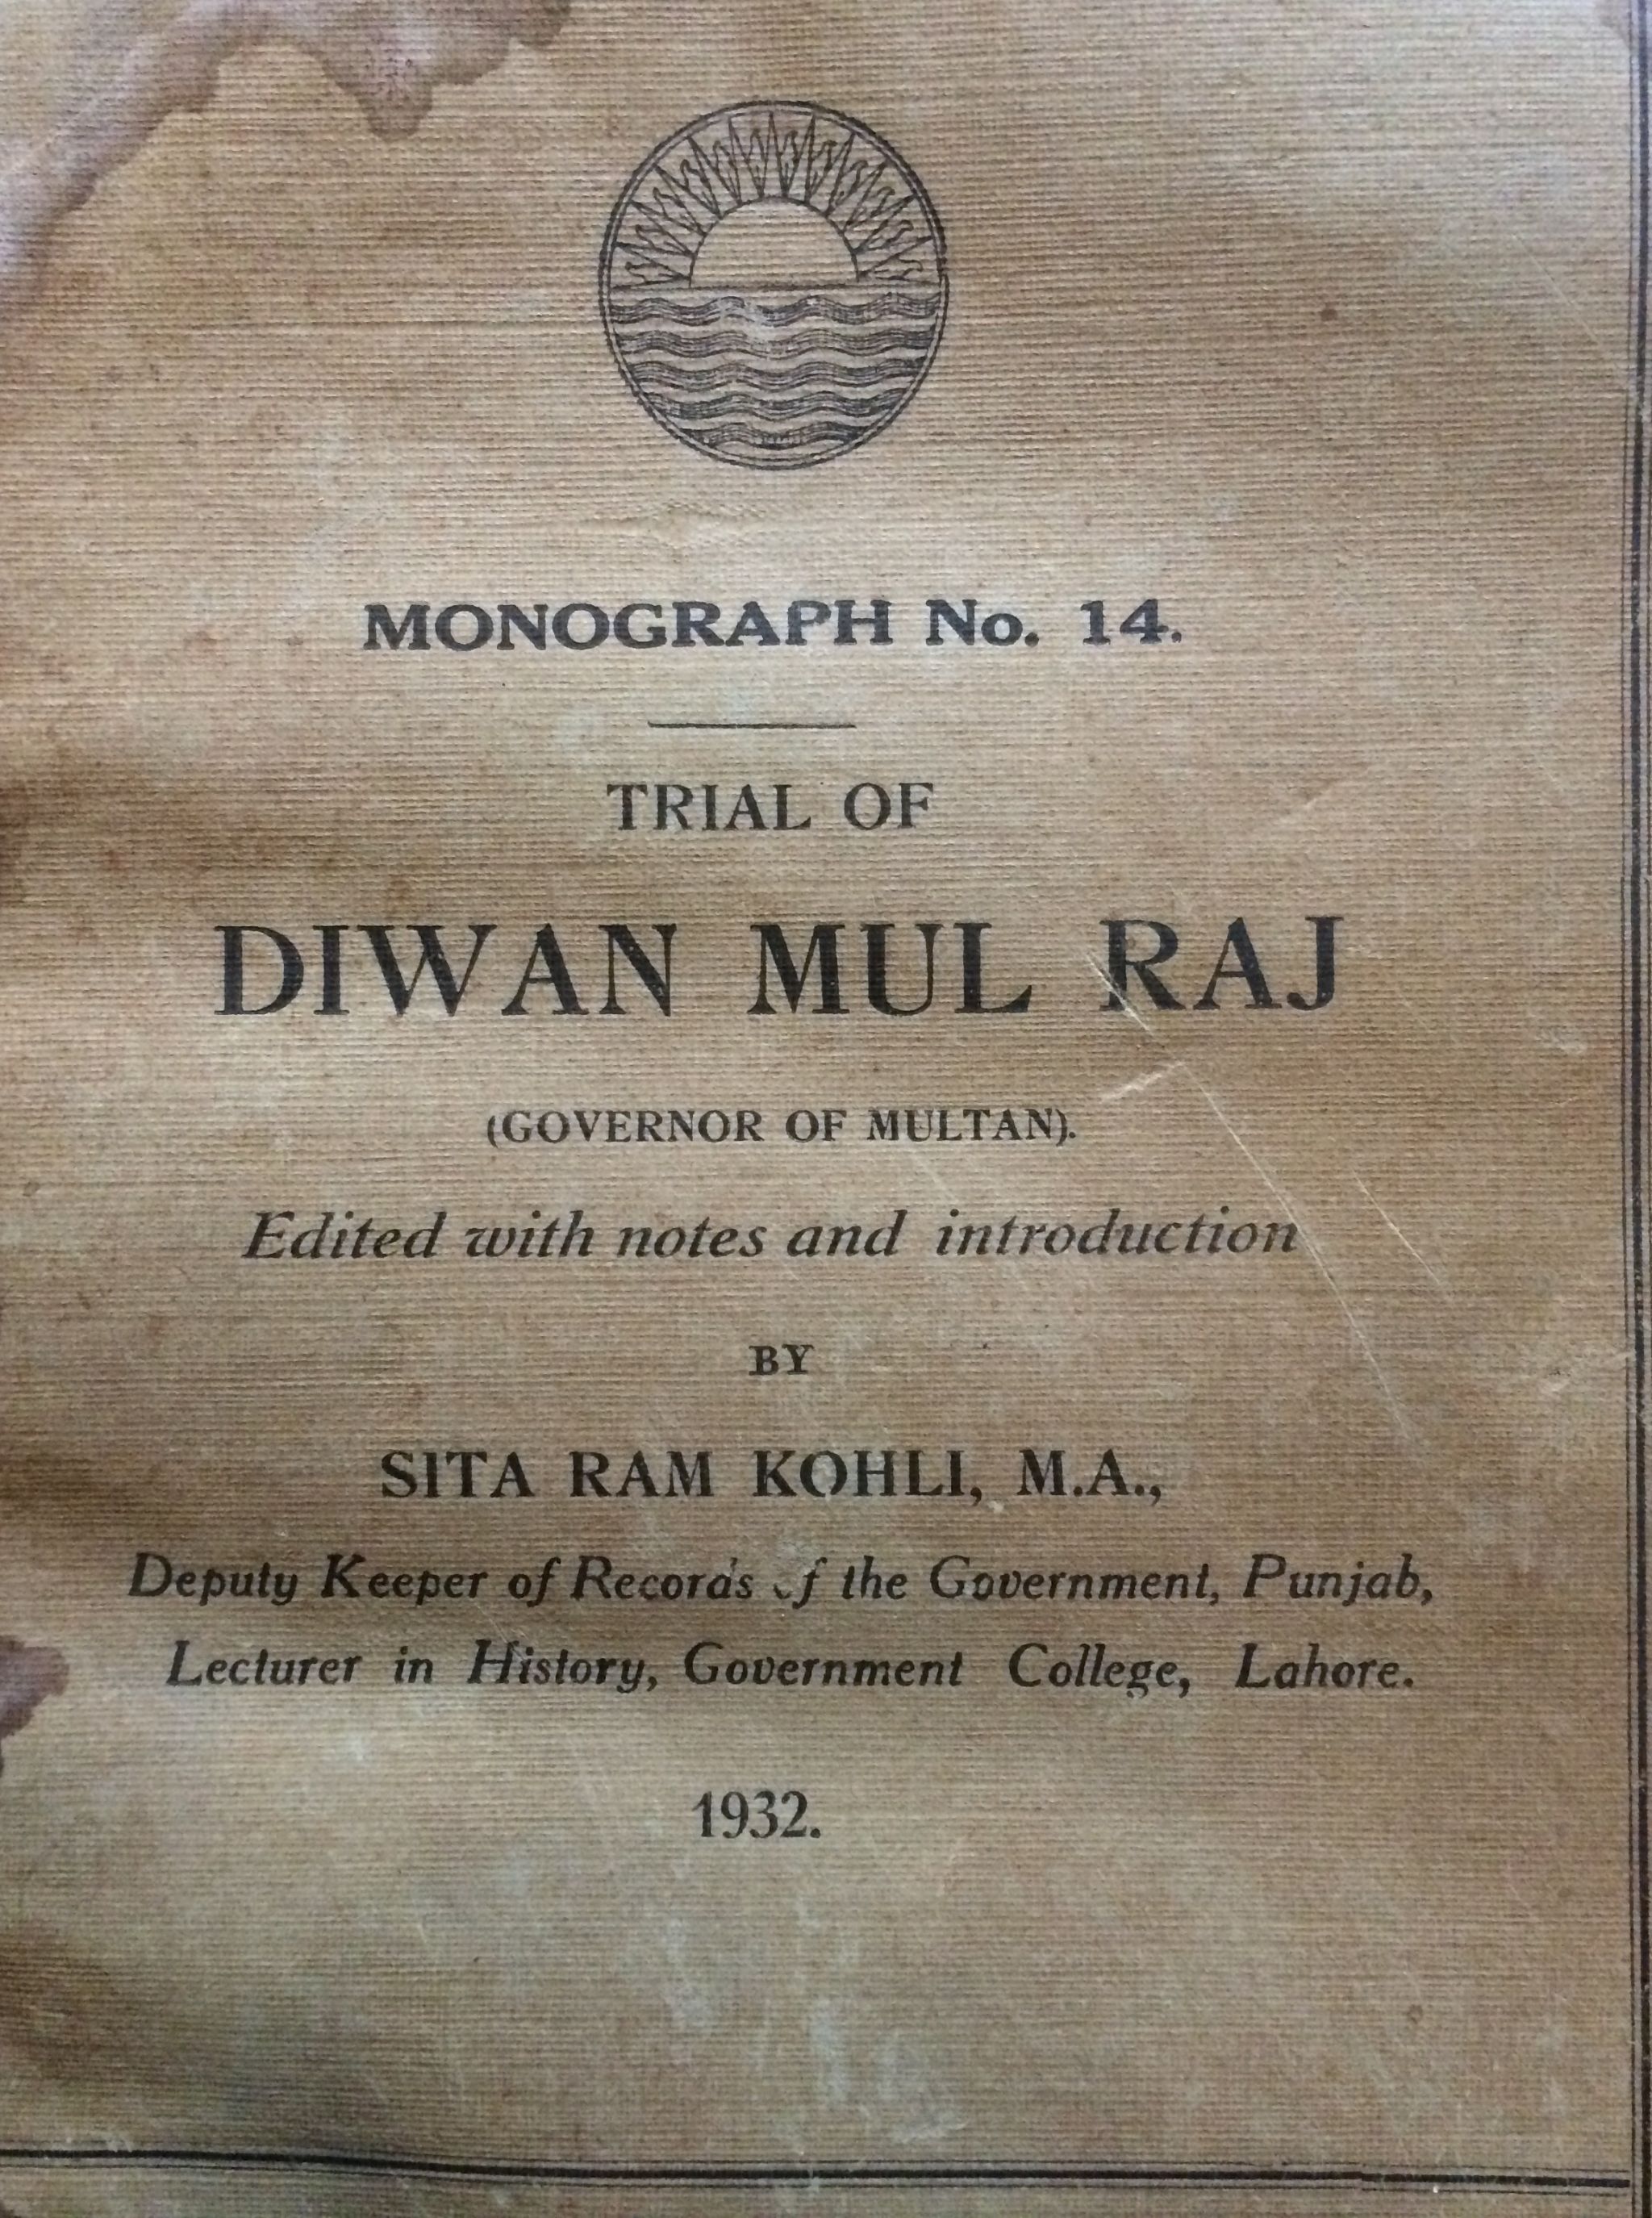 INDIA - DIWAN MOOLRAJ OF MULTAN - Trial of Diwan Mul Raj, Governor of Multan, Punjab Government